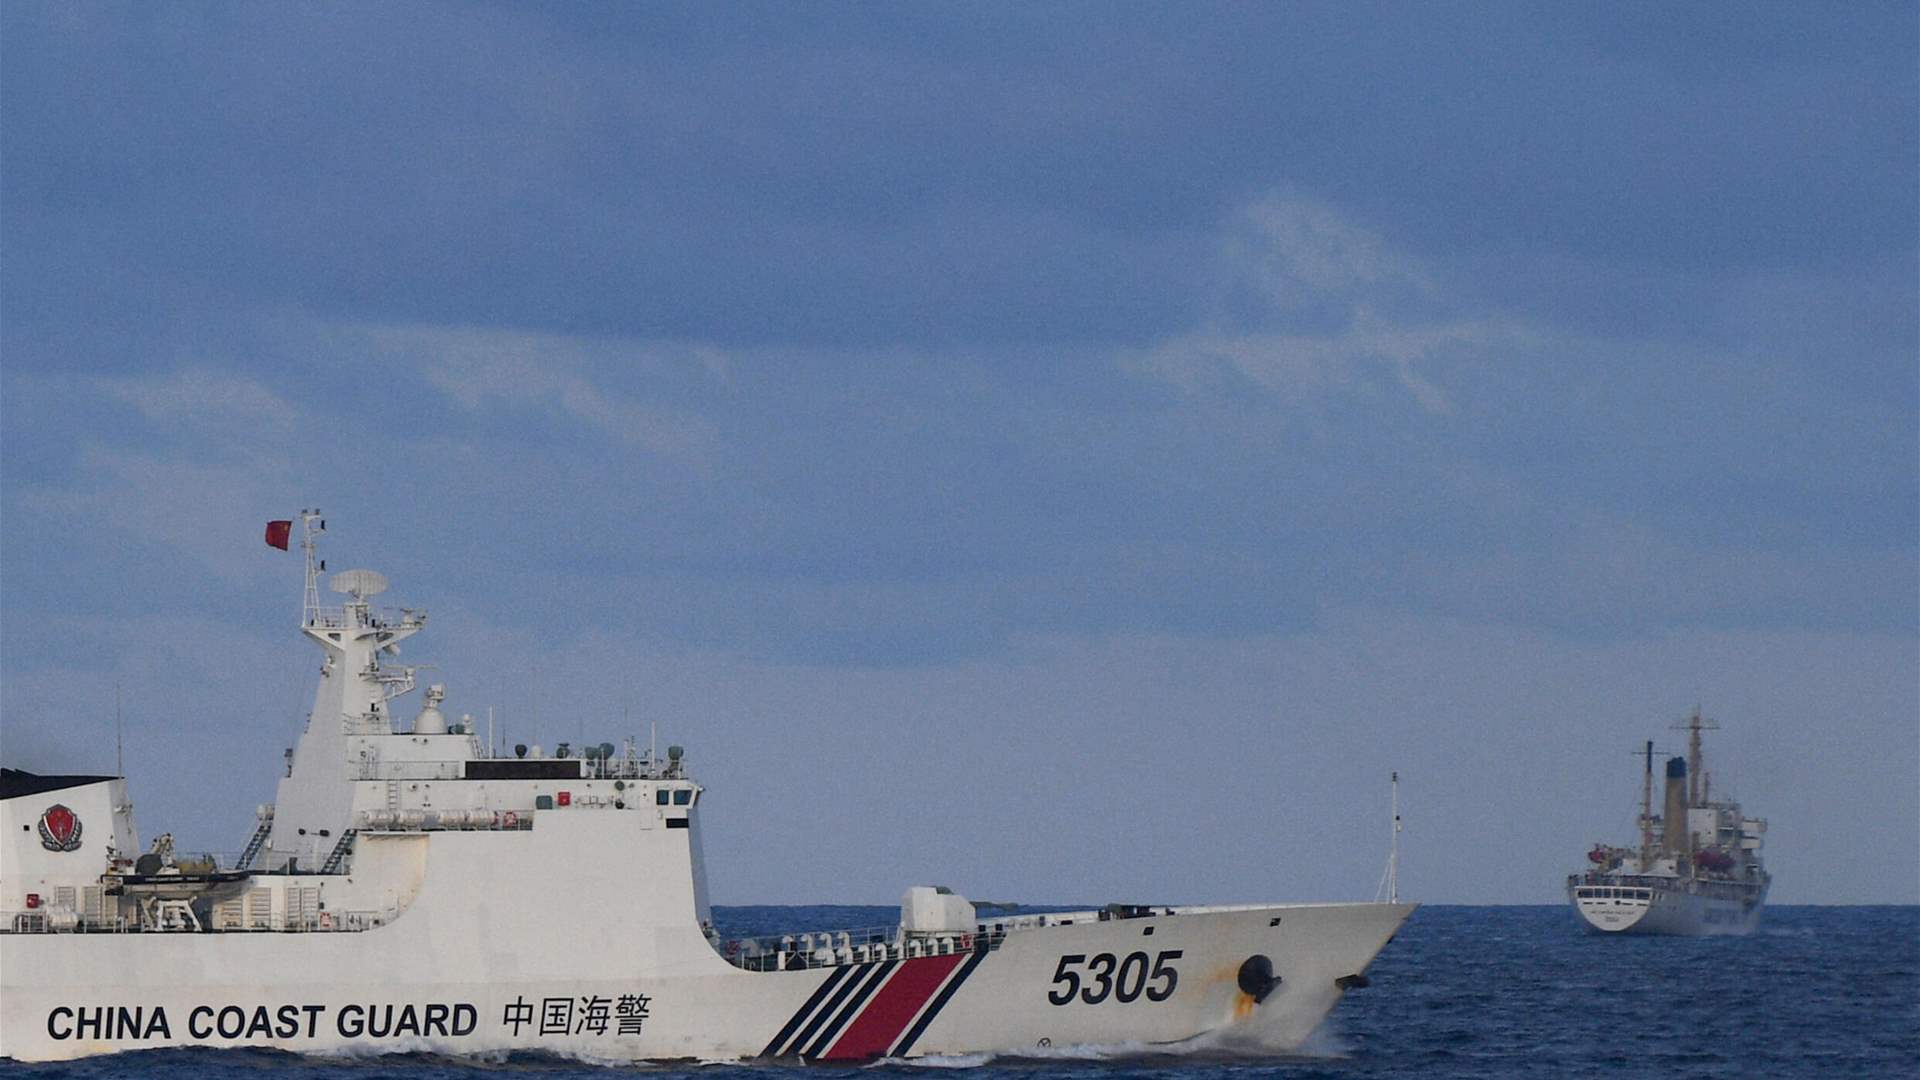 اشتباك بين خفر السواحل الصينيين وبحارة فيليبينيين